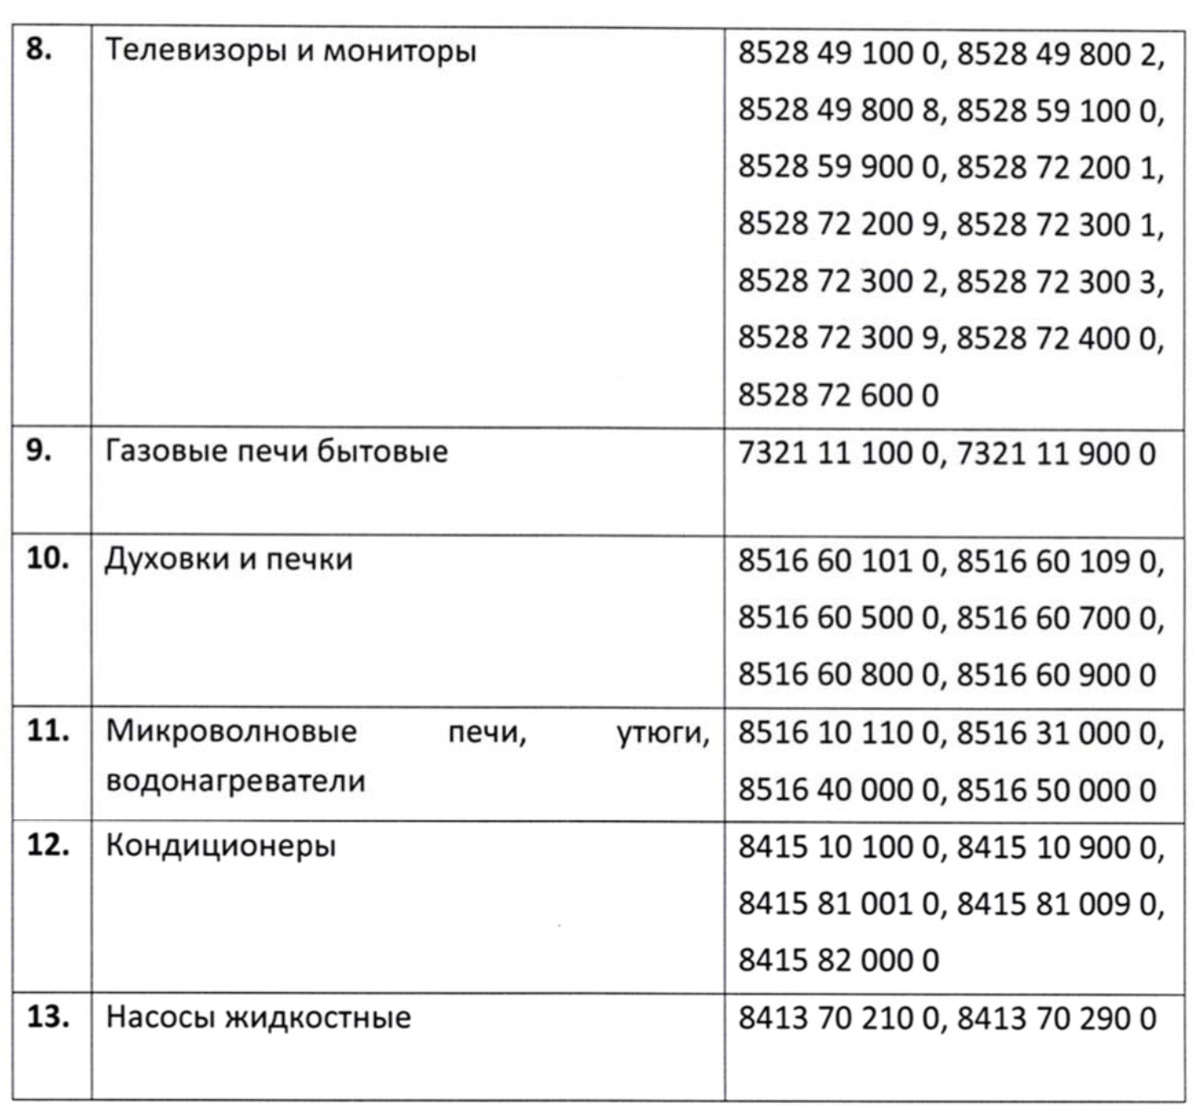 Для импорта бытовой техники в Узбекистан потребуется наличие дилера  производителя – Новости Узбекистана – Газета.uz